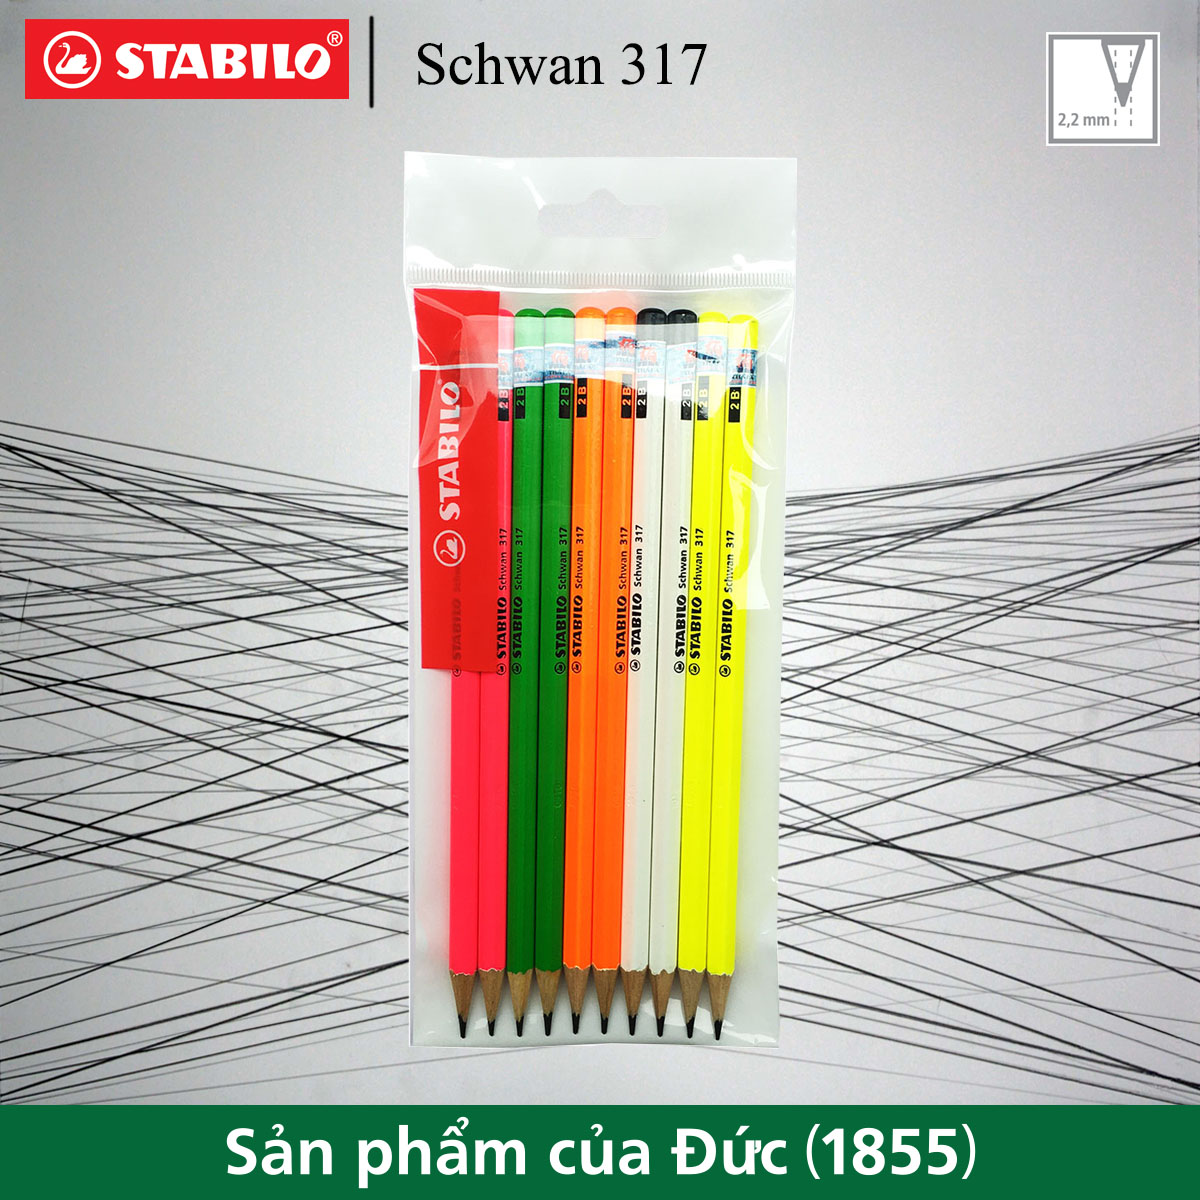 Bộ 10 bút chì gỗ STABILO Schwan 317 2B